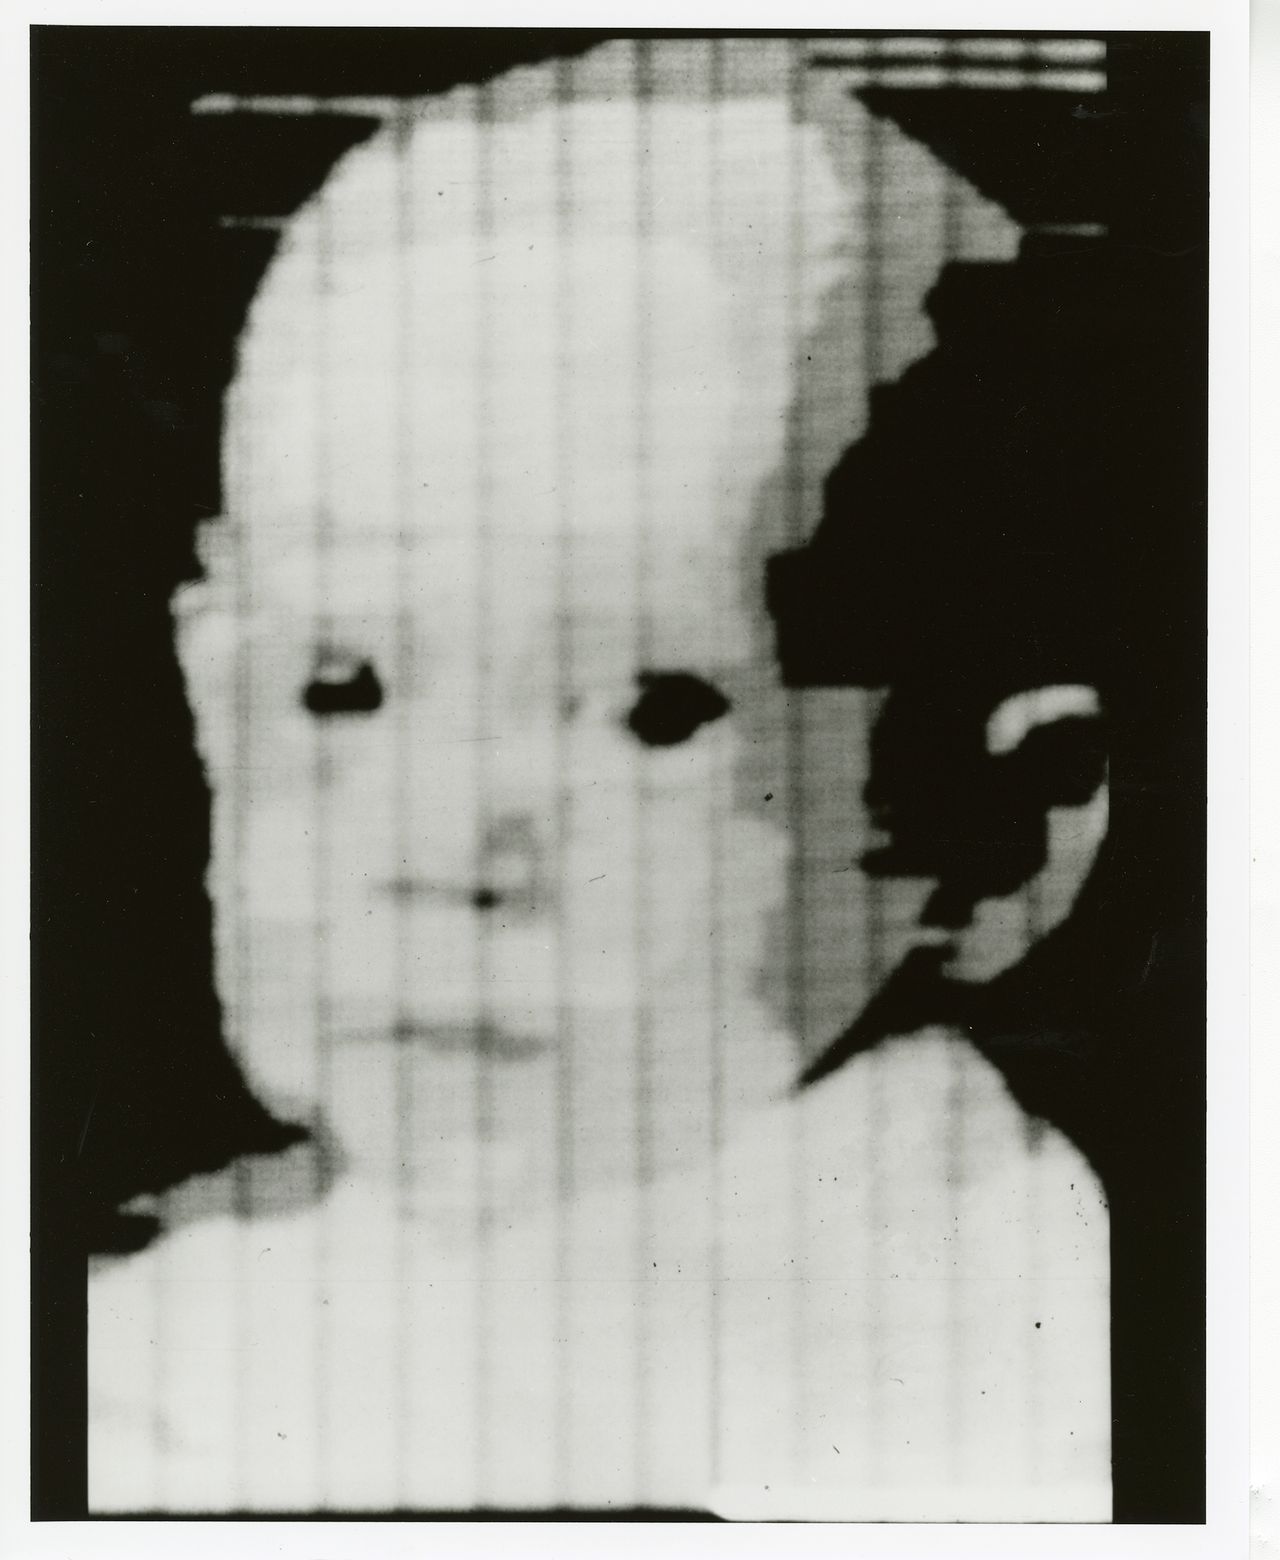 Zdjęcie syna Russella Kirscha było jednym z pierwszych cyfrowych skanów w historii.